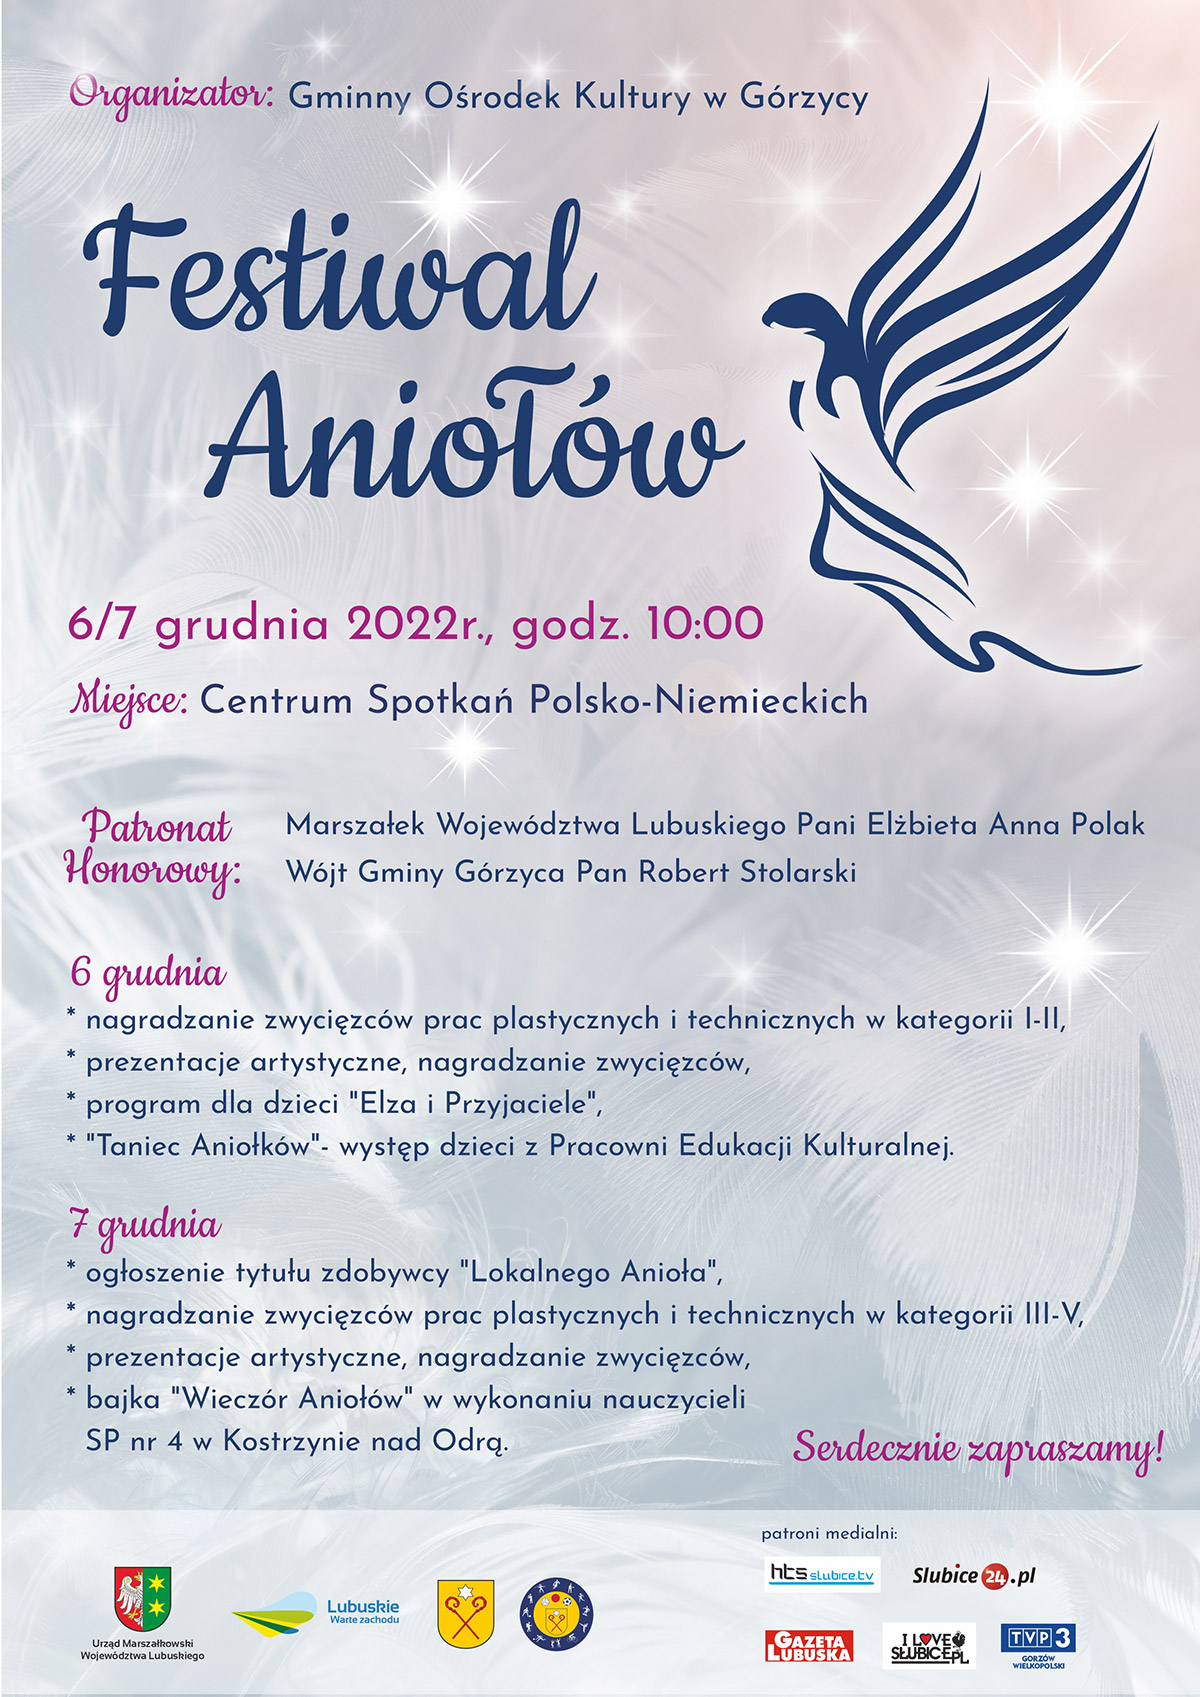 festiwal aniolow